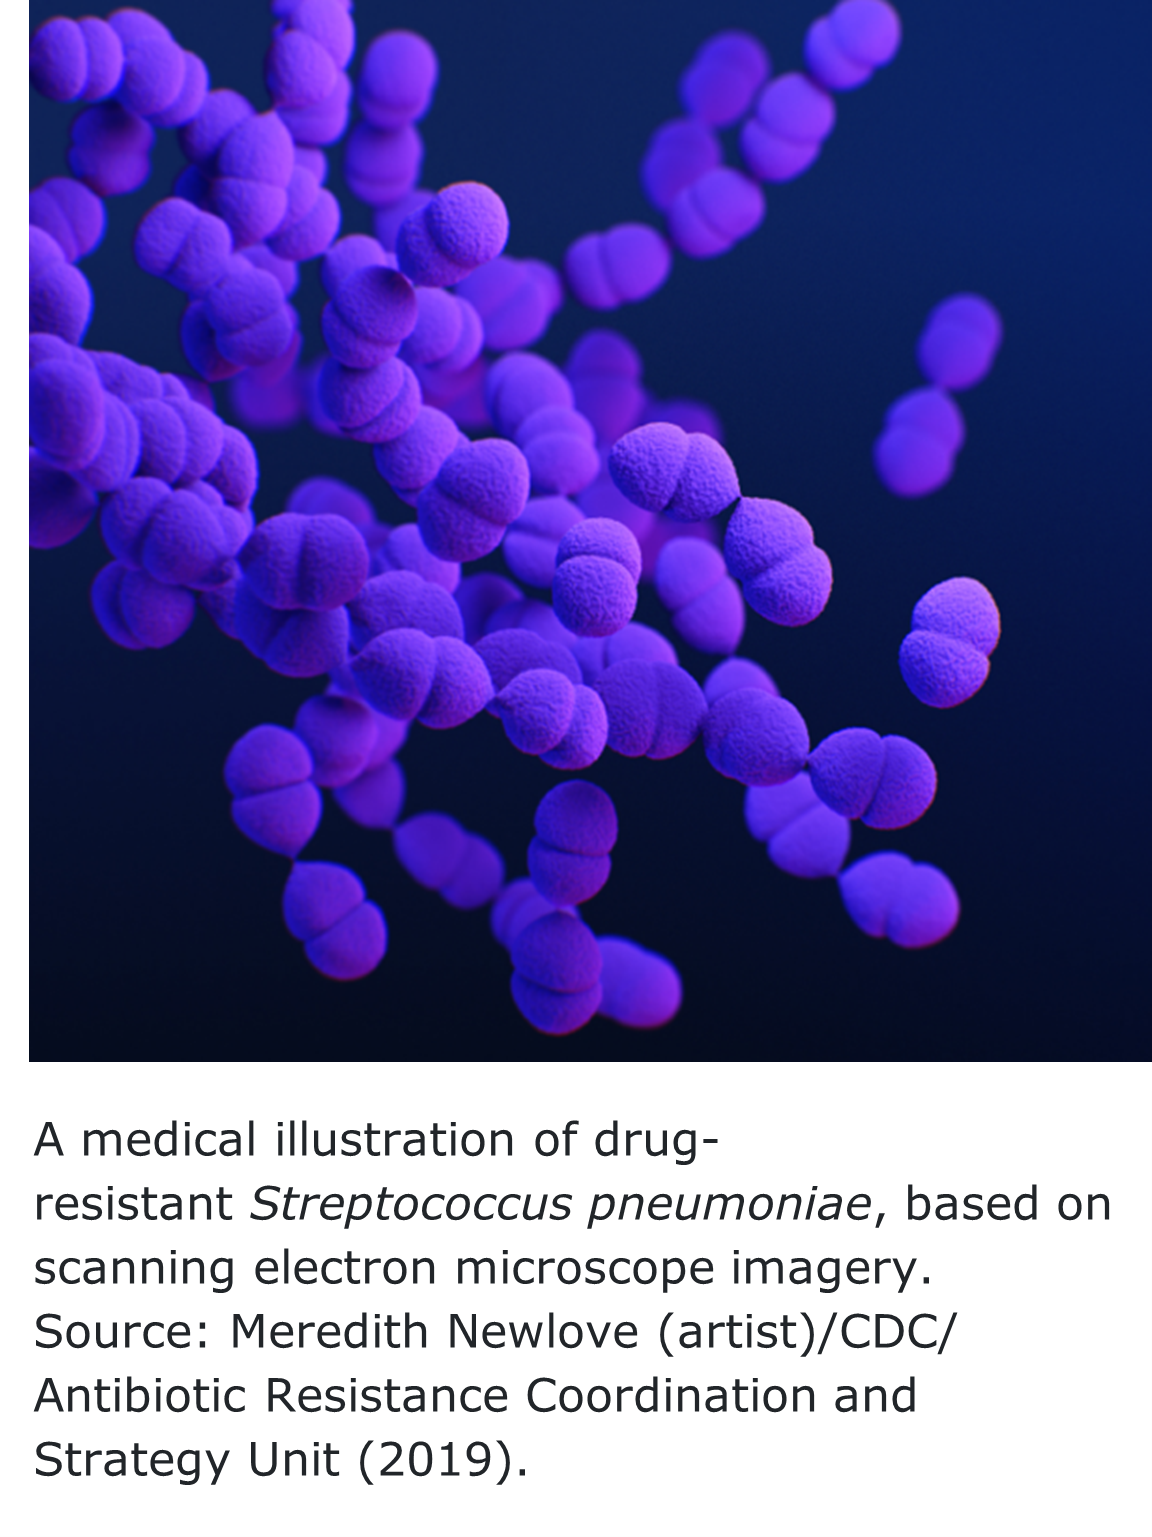 "Clumps of purple colored di-cocci bacteria "